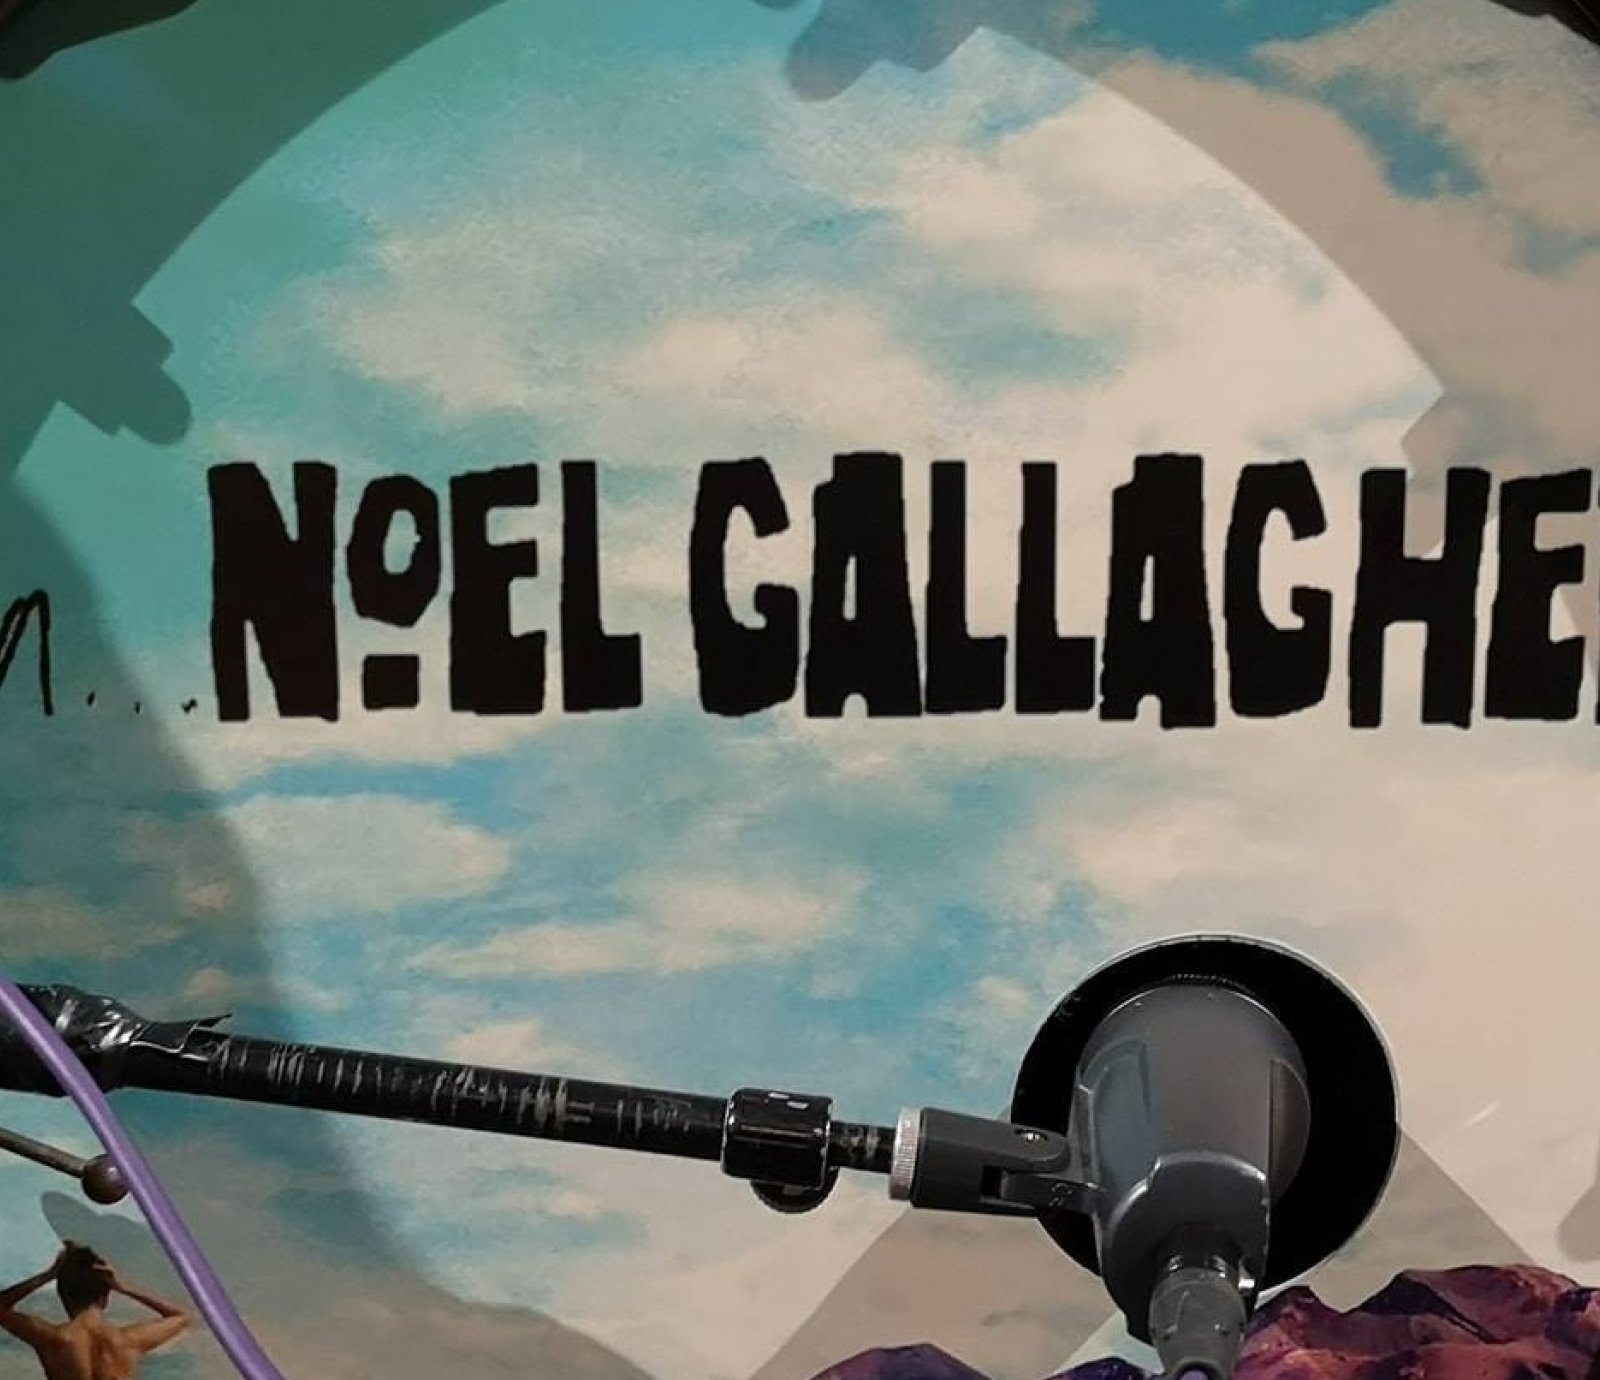 AKA Noel Gallagher